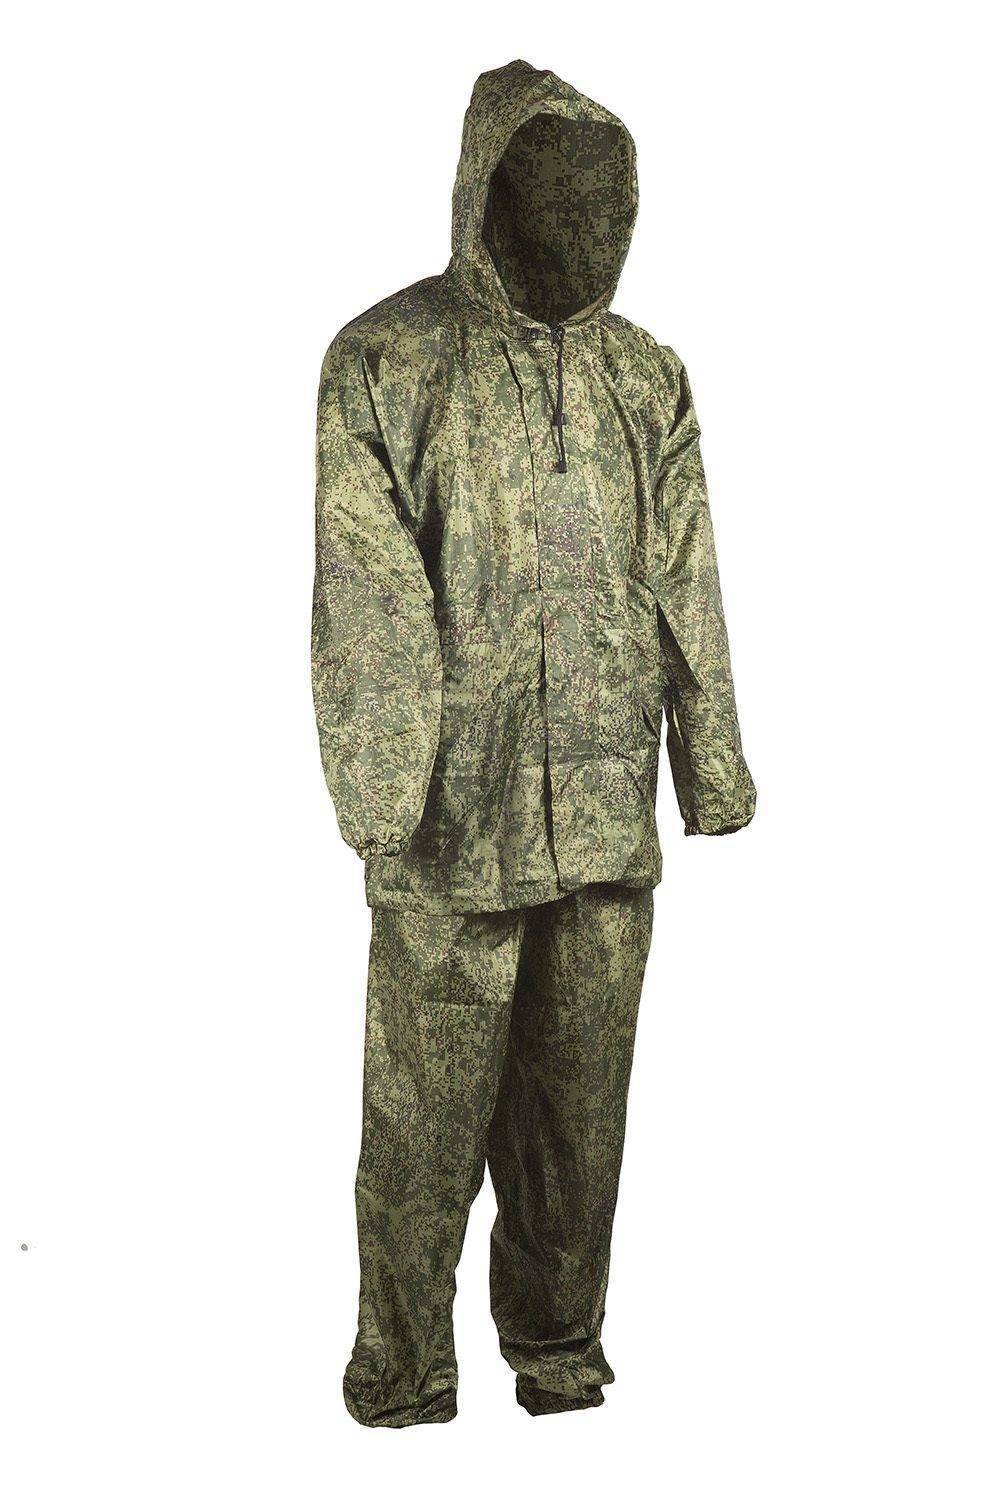 Летний костюм для рыбалки, рыболовная одежда (непромокаемая, дышащая, мембранная)